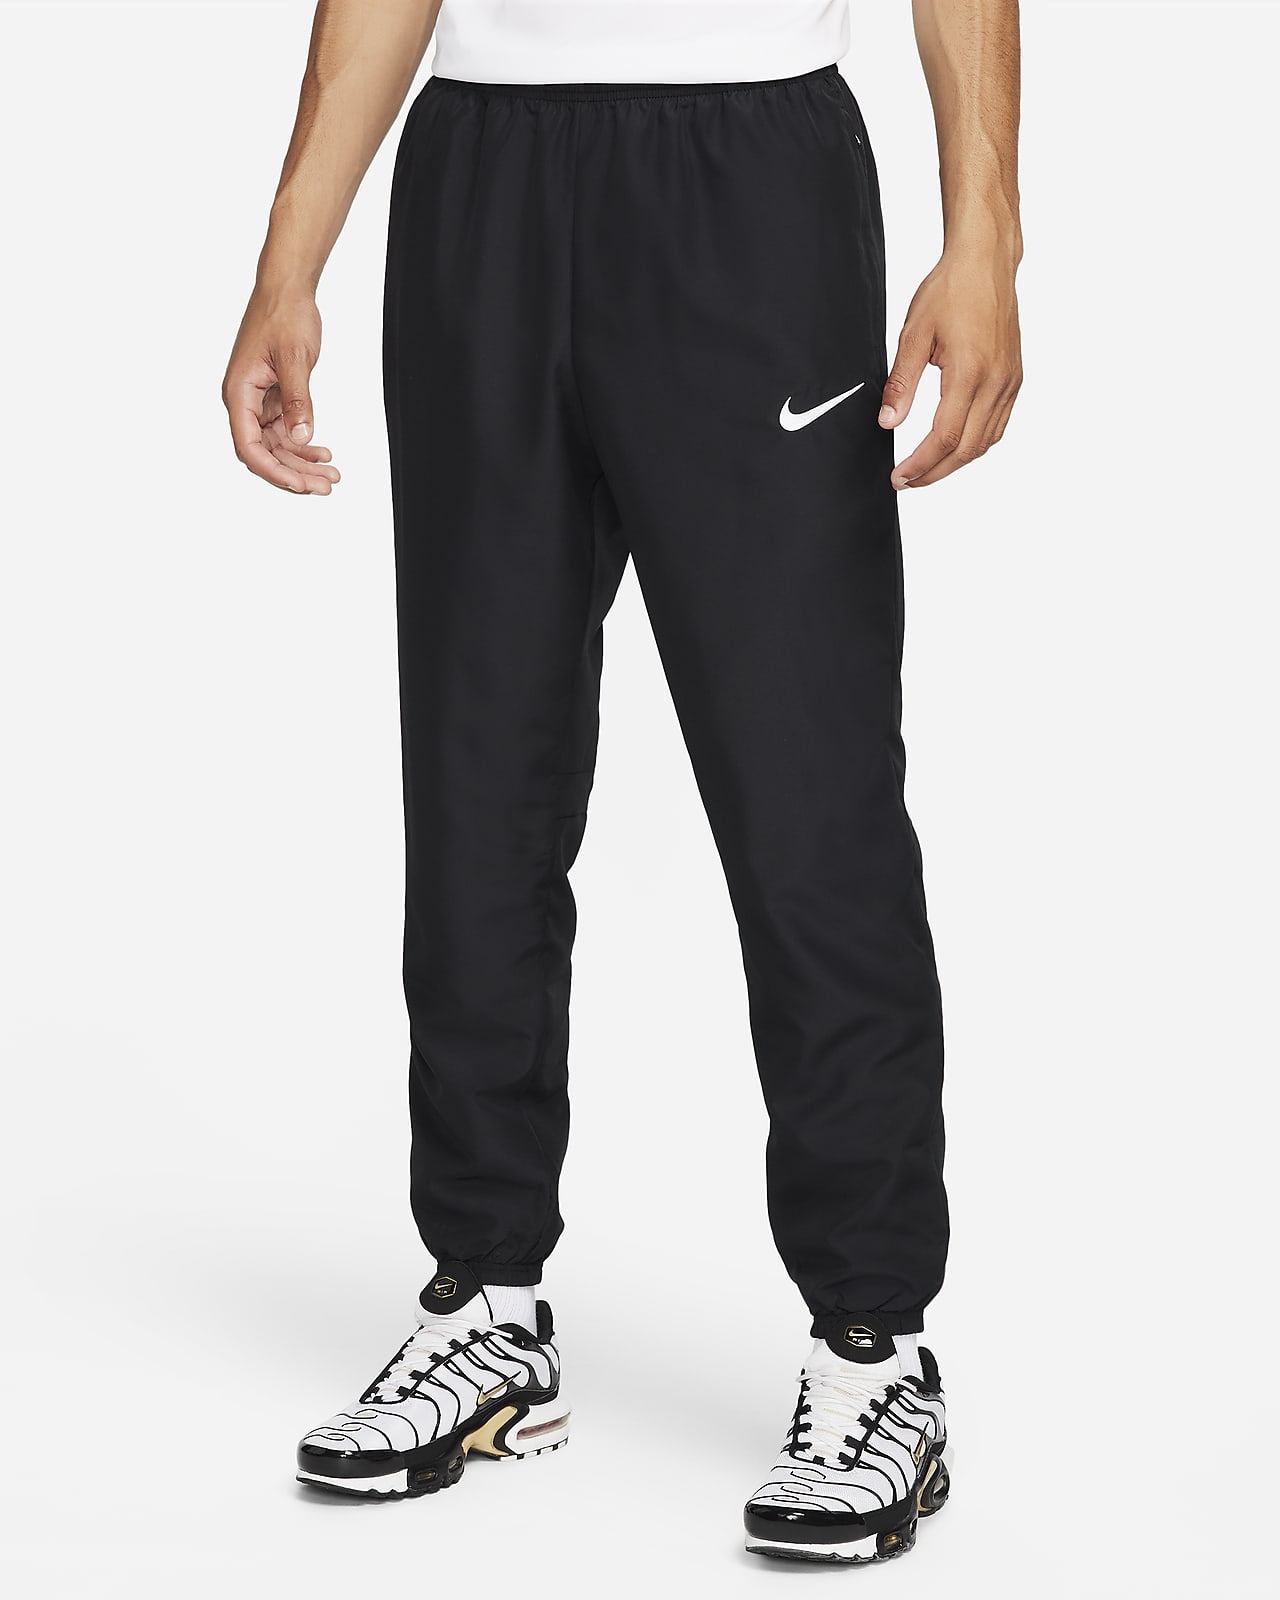 Nike Yoga Men's Dri-FIT Trousers. Nike IL